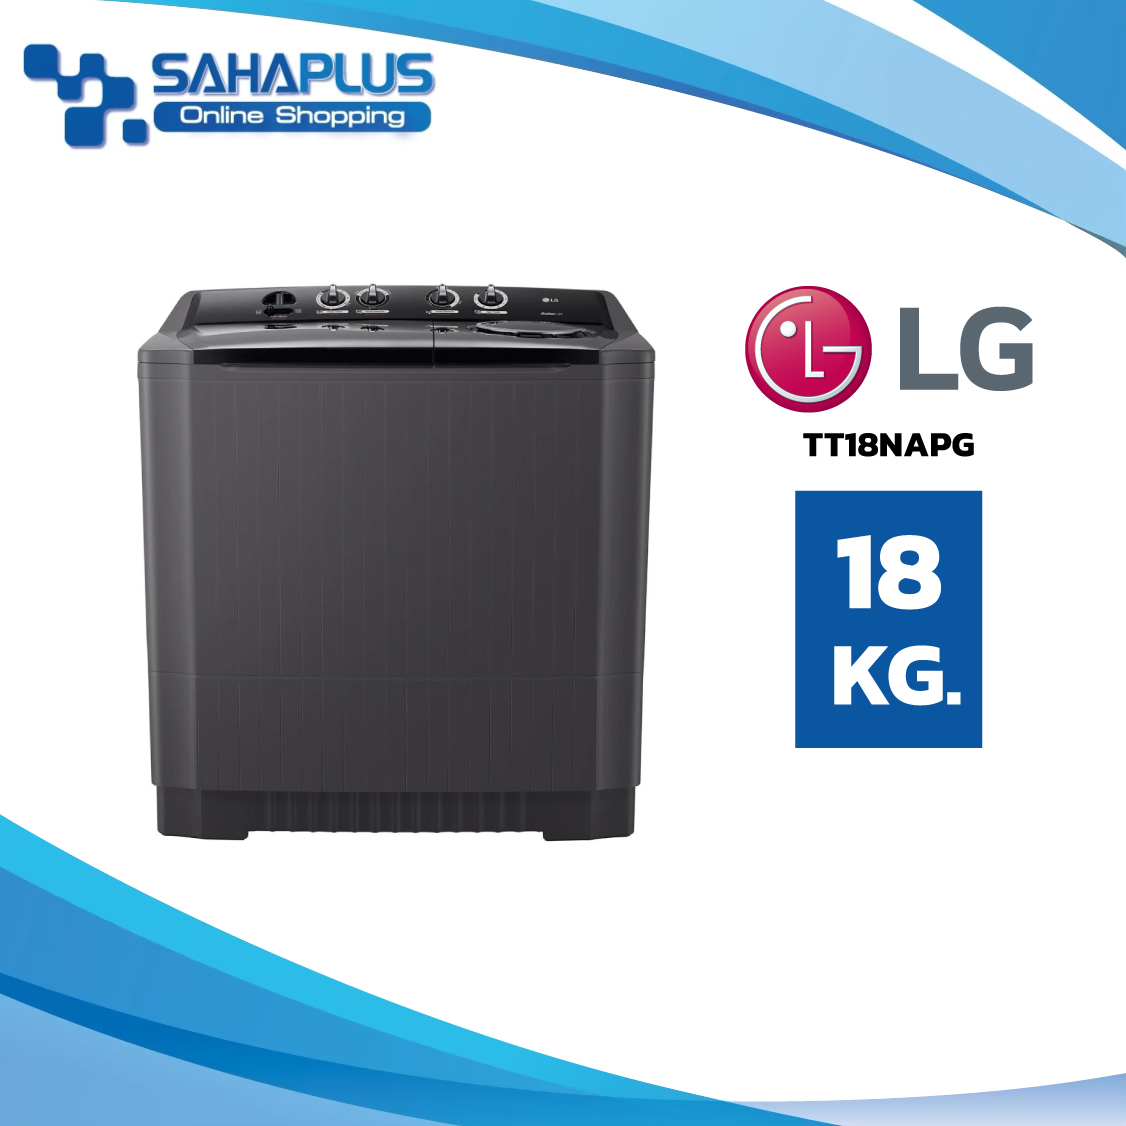 เครื่องซักผ้า 2 ถัง LG รุ่นใหม่ TT18NAPG ขนาด 18 KG (รับประกันนาน 5 ปี)